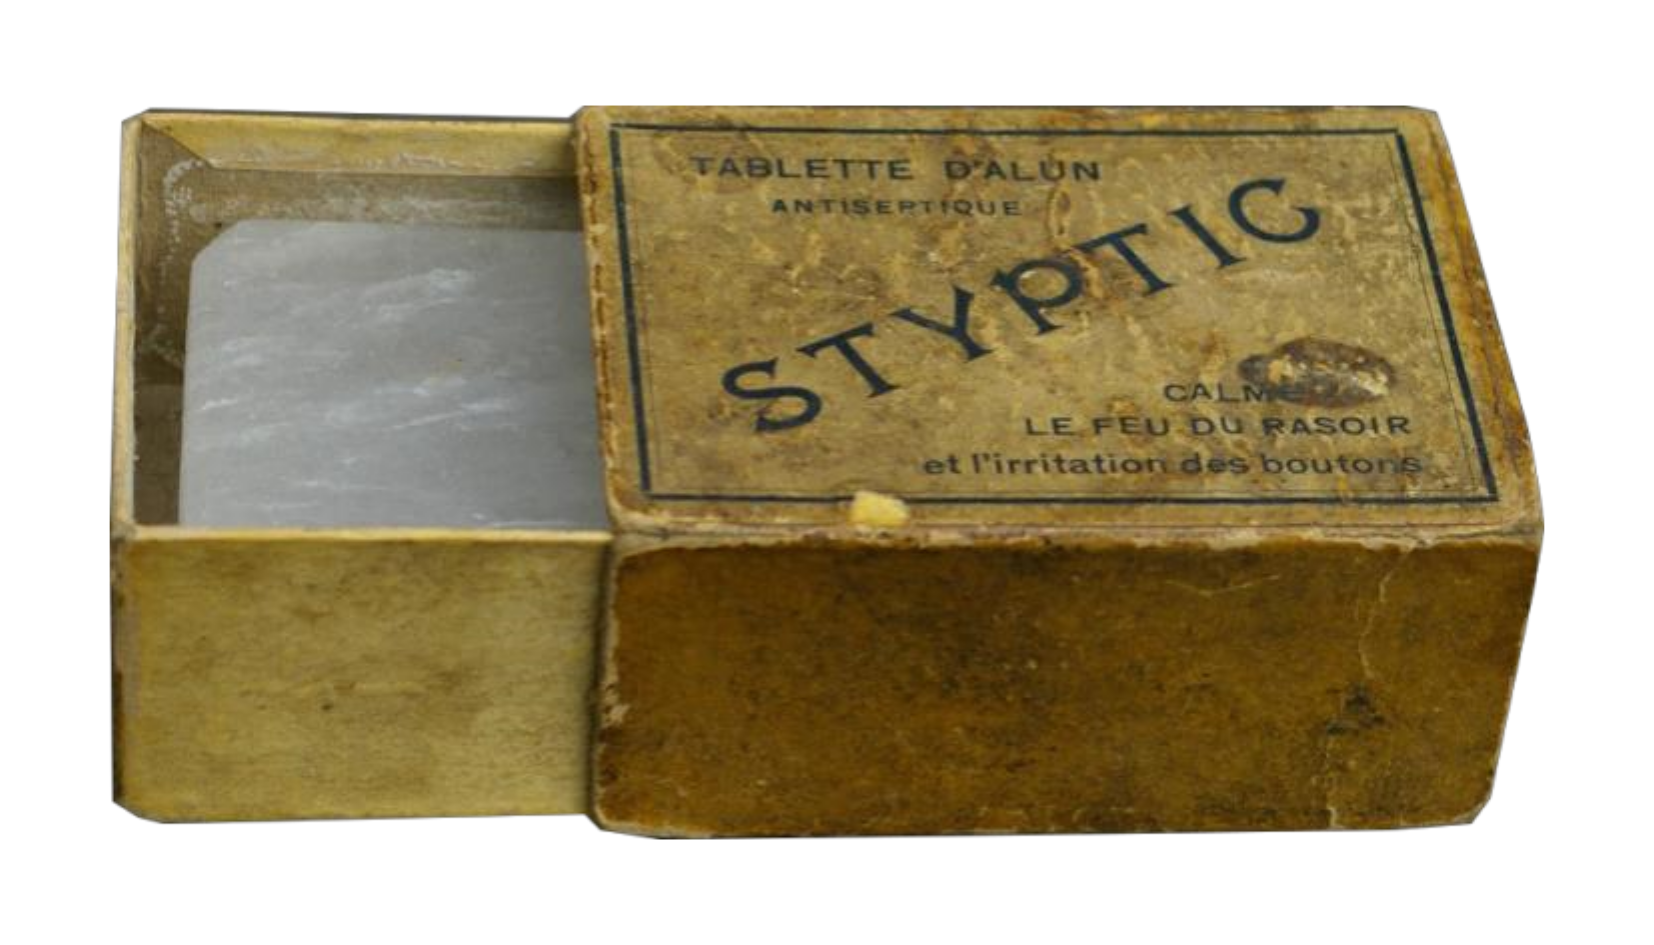 Tablette d'Alun Styptic